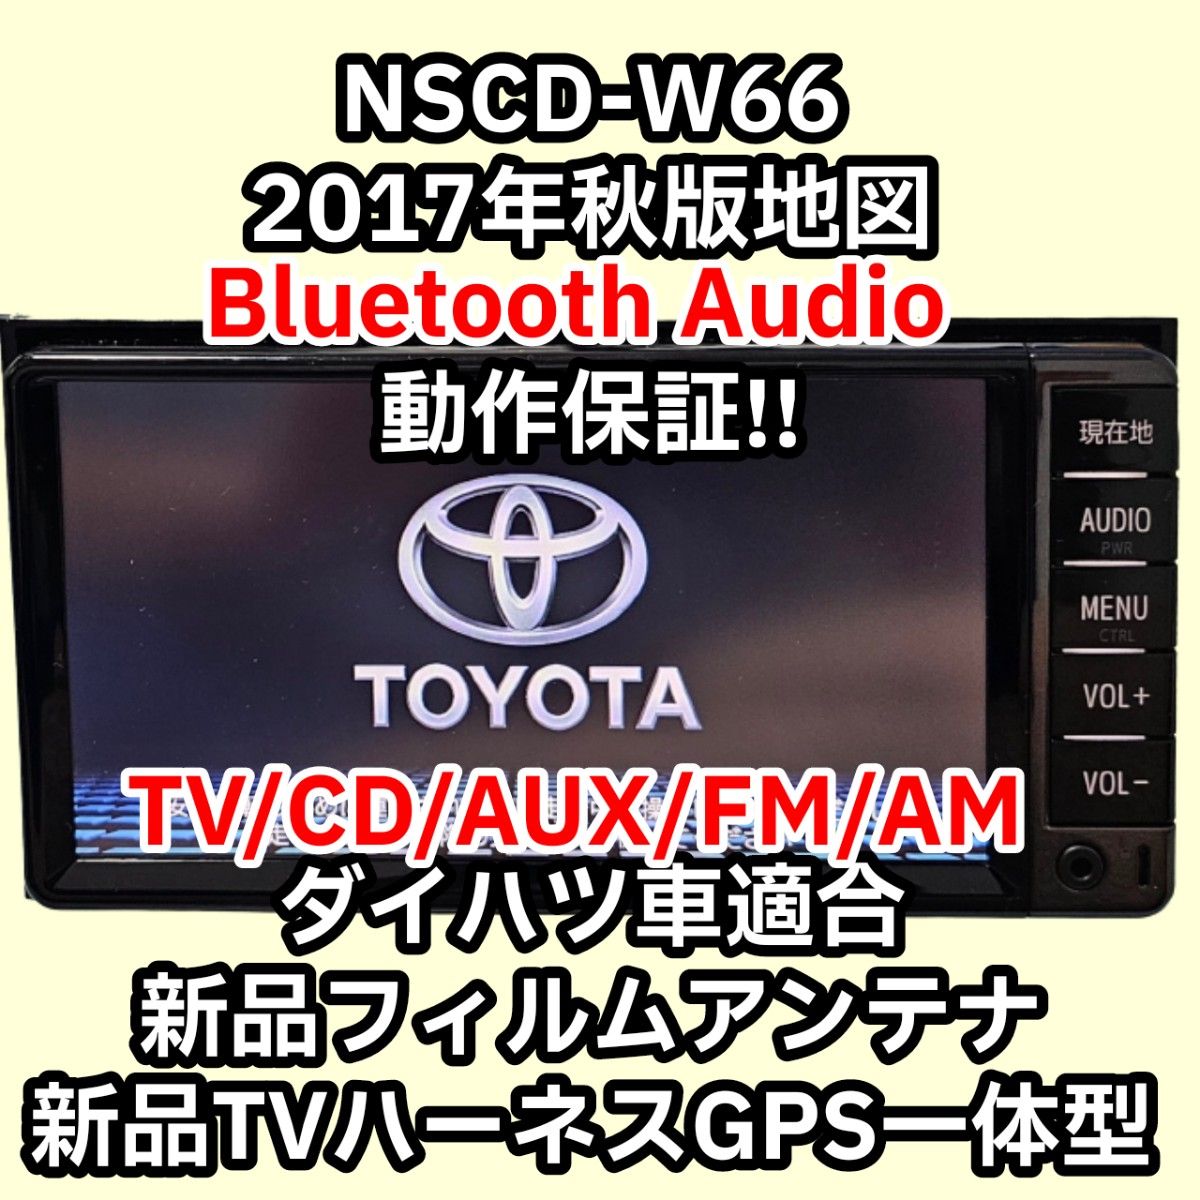 保証付 送料無料 トヨタ純正ナビ NSCD-W66 2017秋 Bluetooth CD AM FM AUX 新品TVアンテナ付属